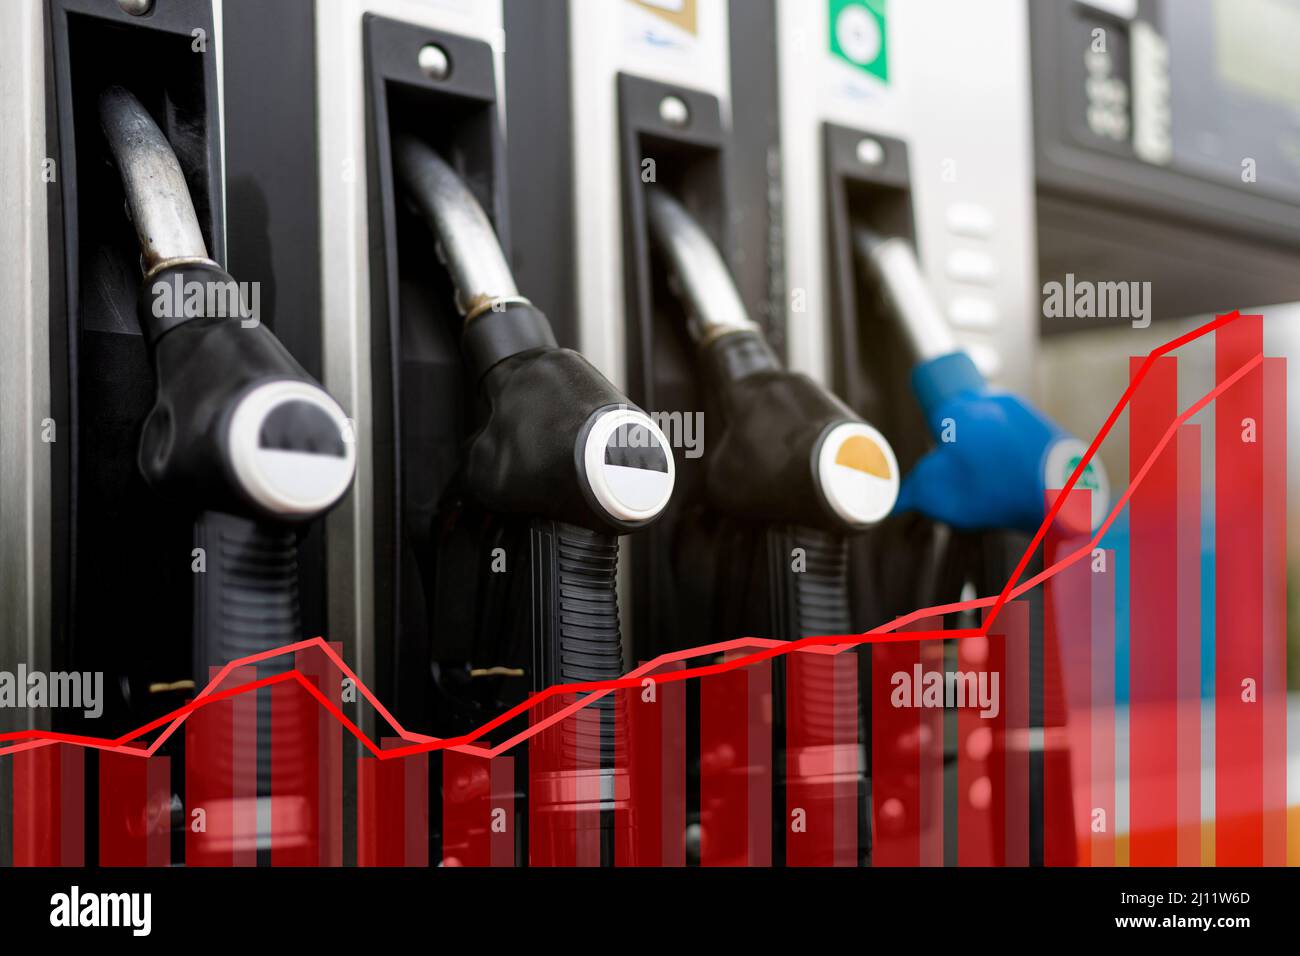 Gros plan d'un distributeur de gaz à une station-service. Graphique statistique de couleur rouge inséré dans l'image. Notion d'augmentation des prix dans le secteur du carburant. Banque D'Images